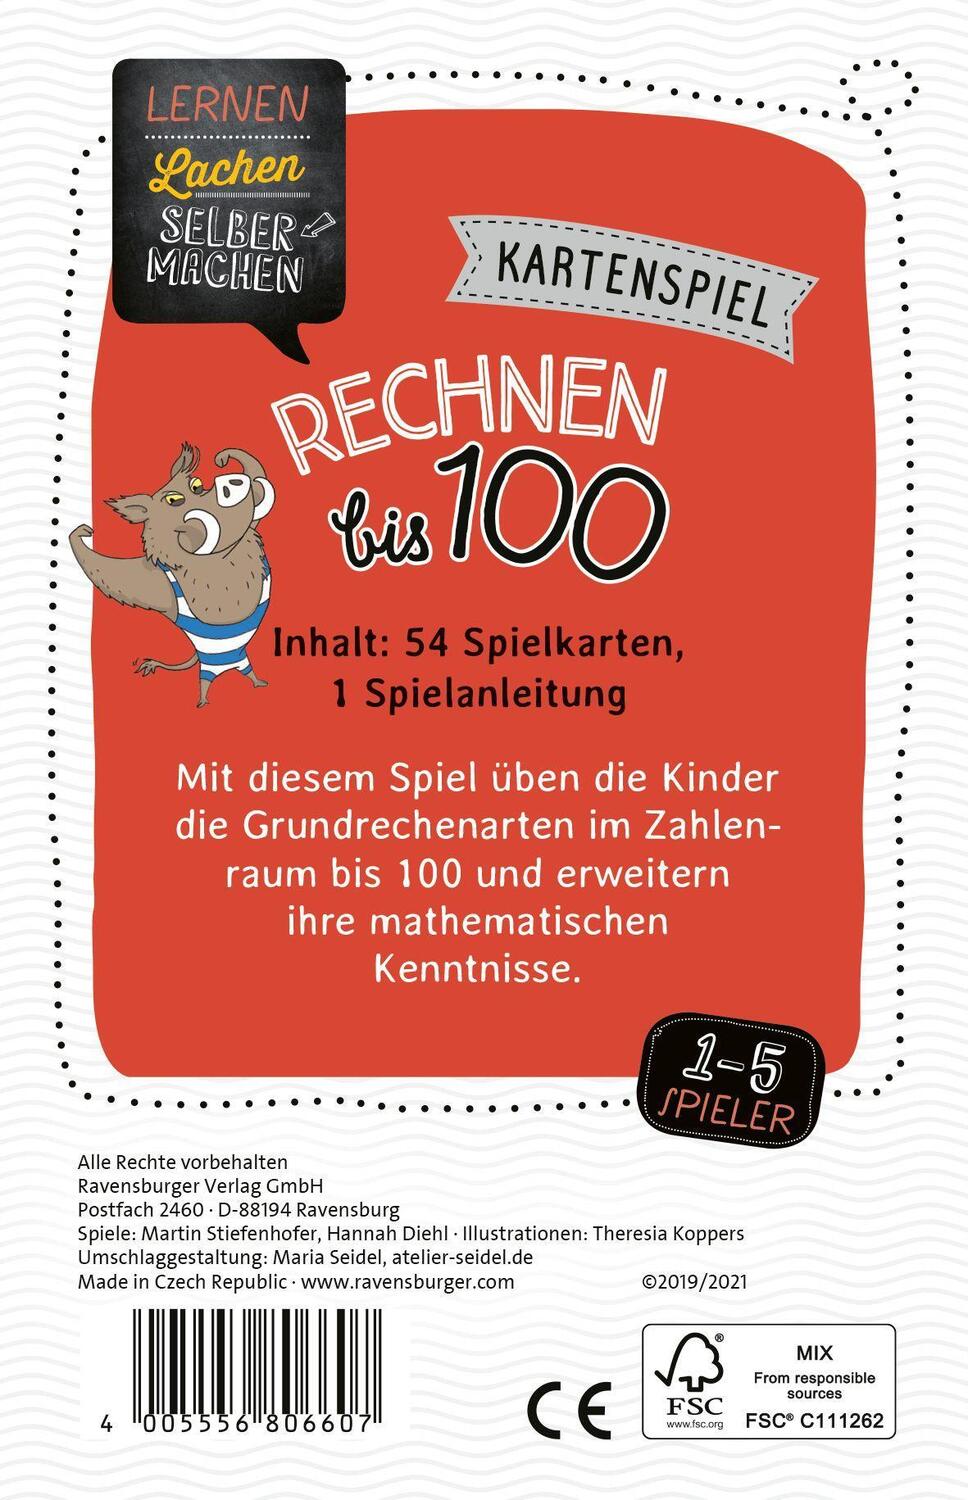 Bild: 4005556806607 | Ravensburger 80660 - Lernen Lachen Selbermachen: Rechnen bis 100,...